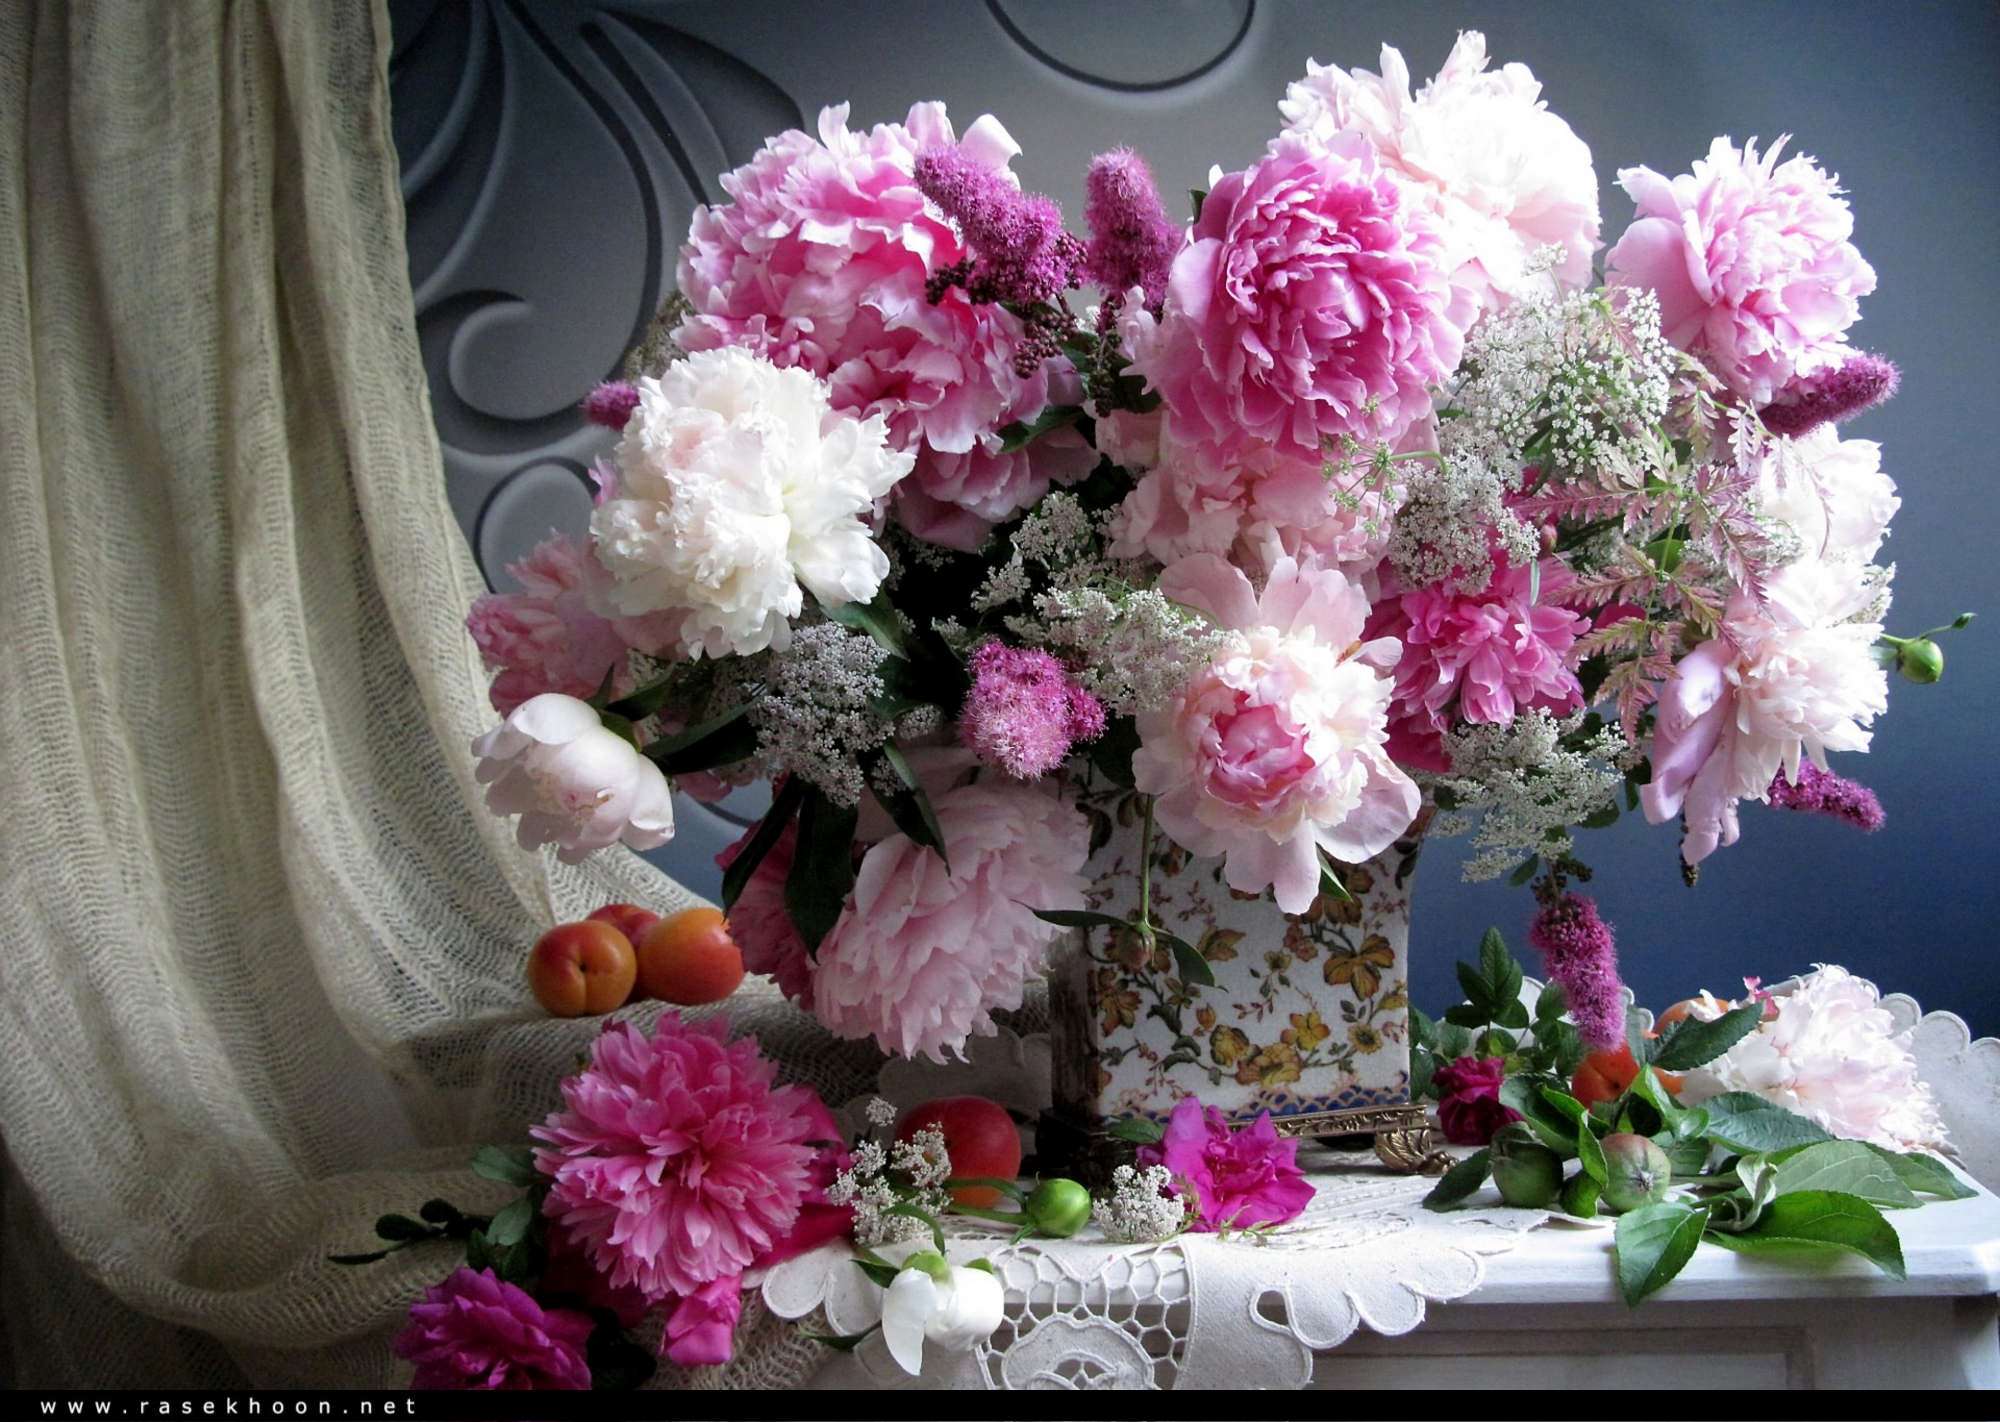 Картинка с цветами на столе. Букет "пионы и сирень". Хьюберт Белфис пионы хризантемы. Лю Янчжоу пионы.